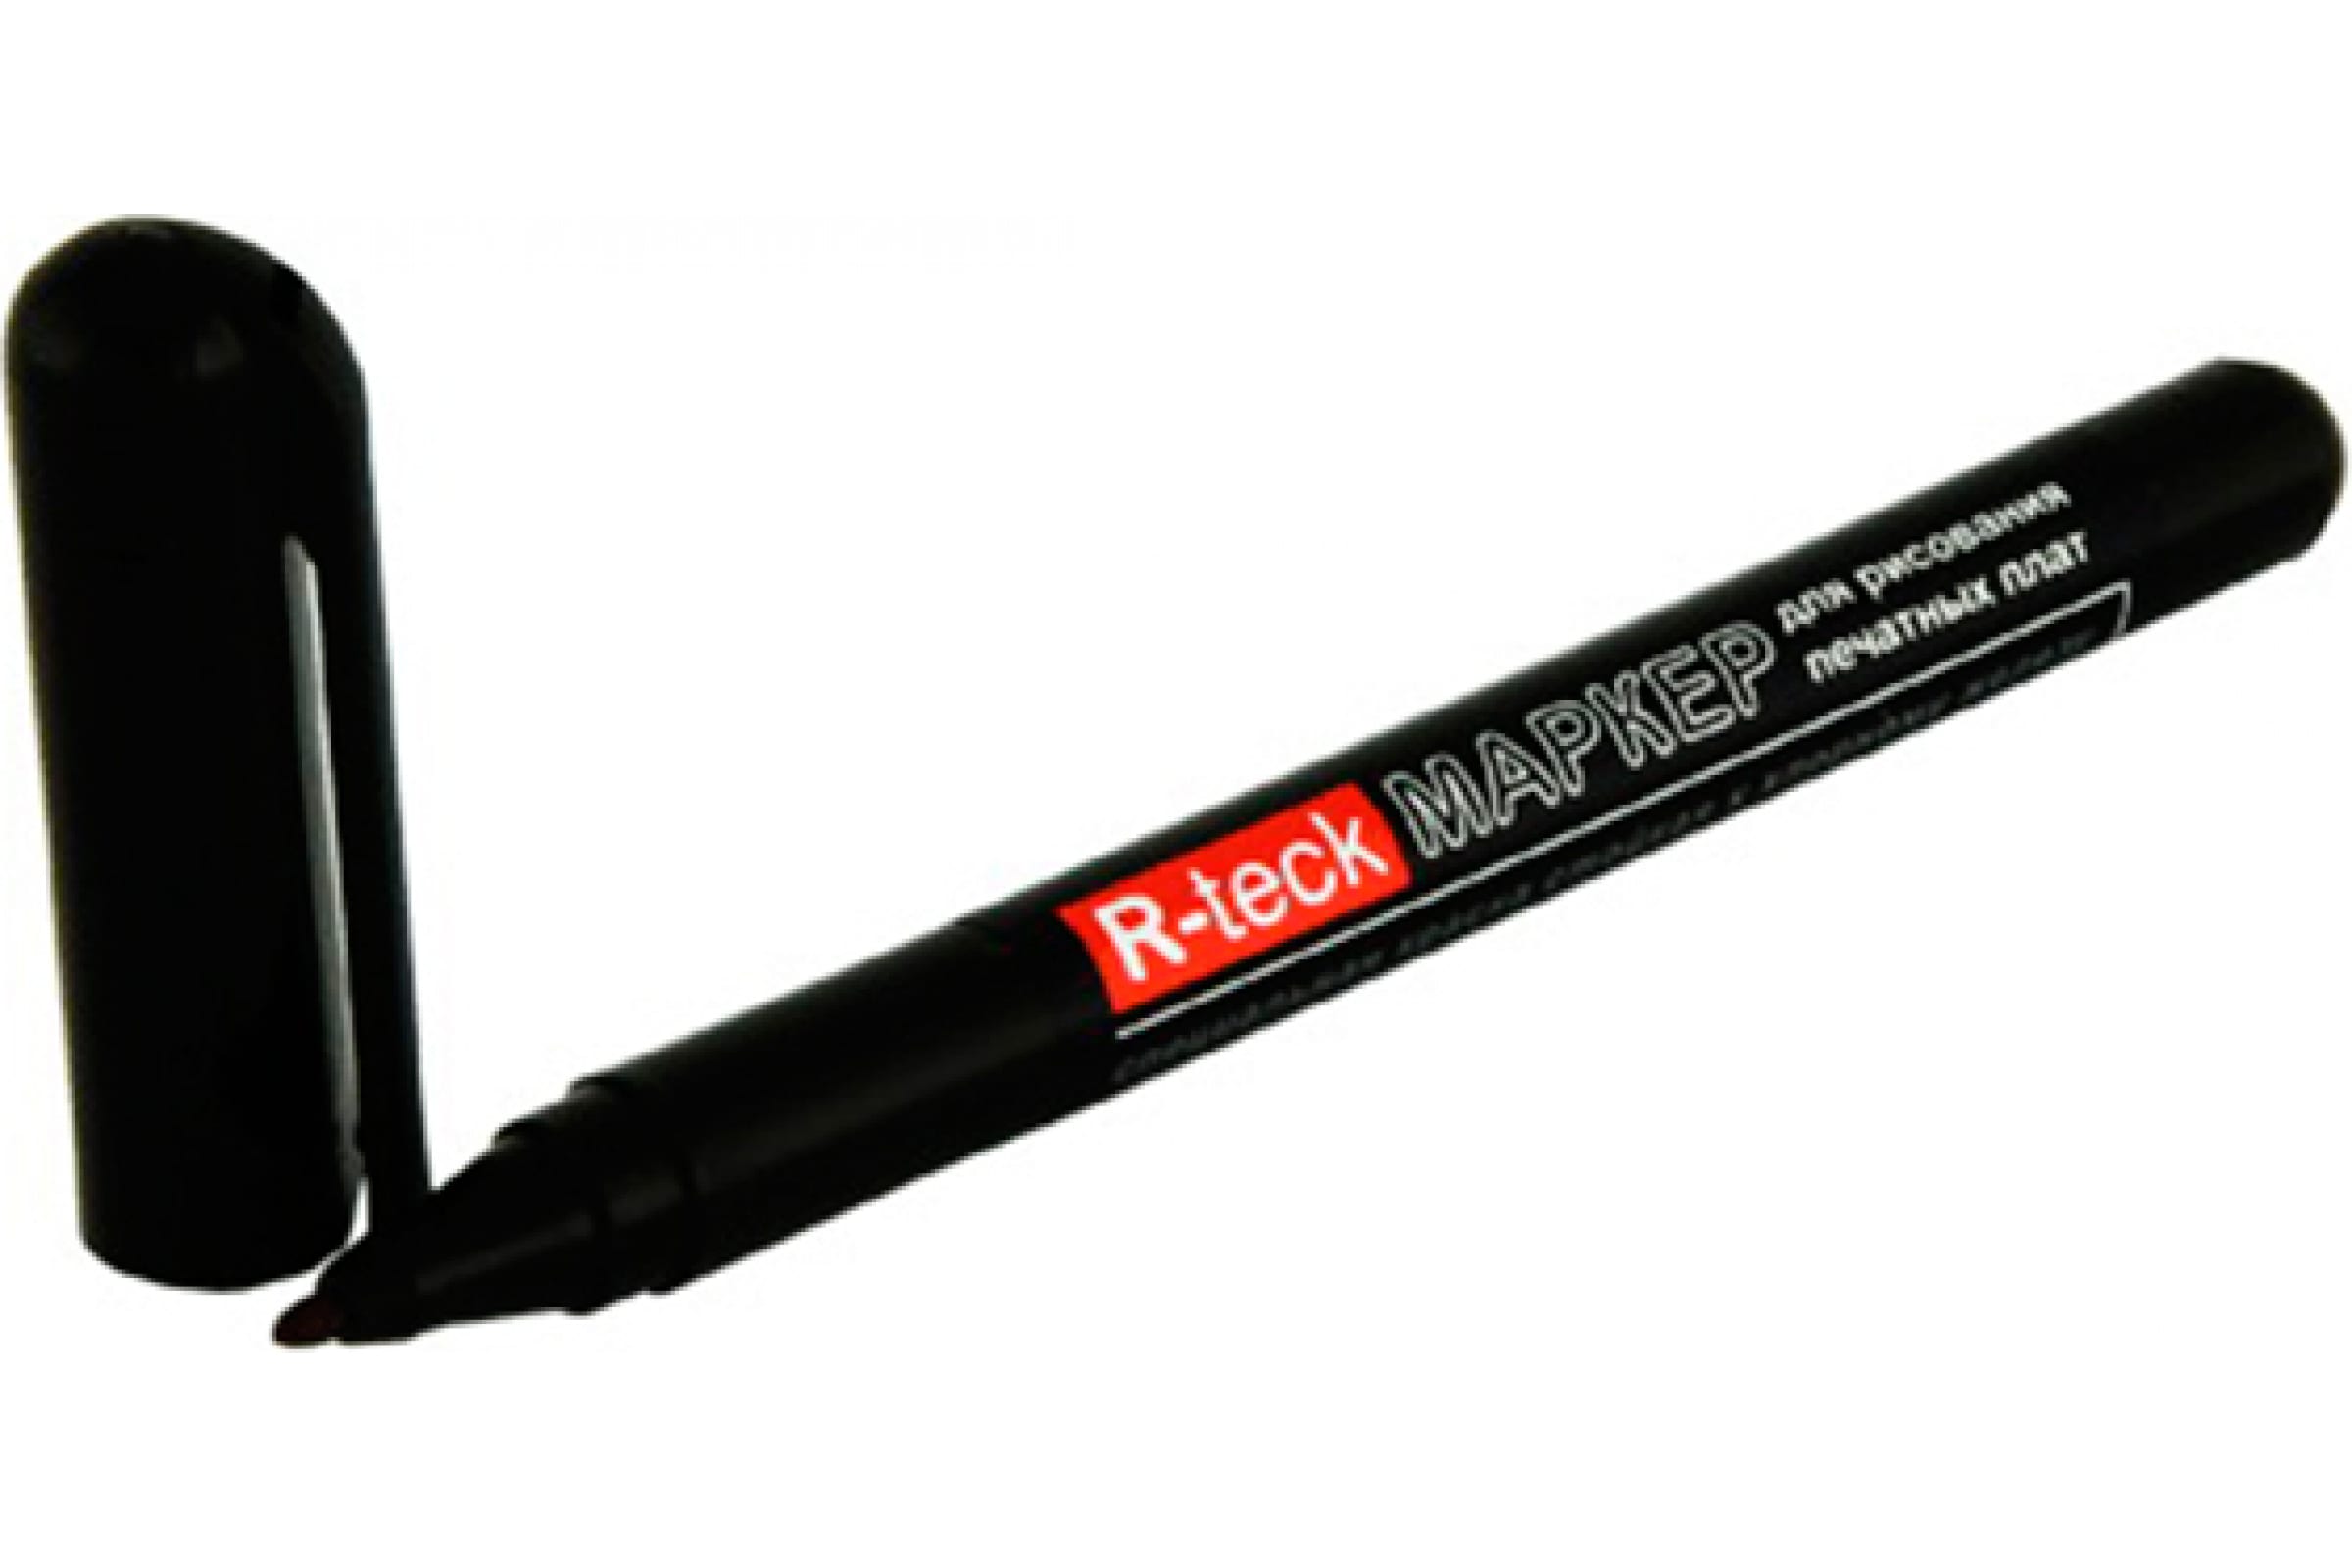 Connector маркер для рисования печатных плат R-TRECK-BK